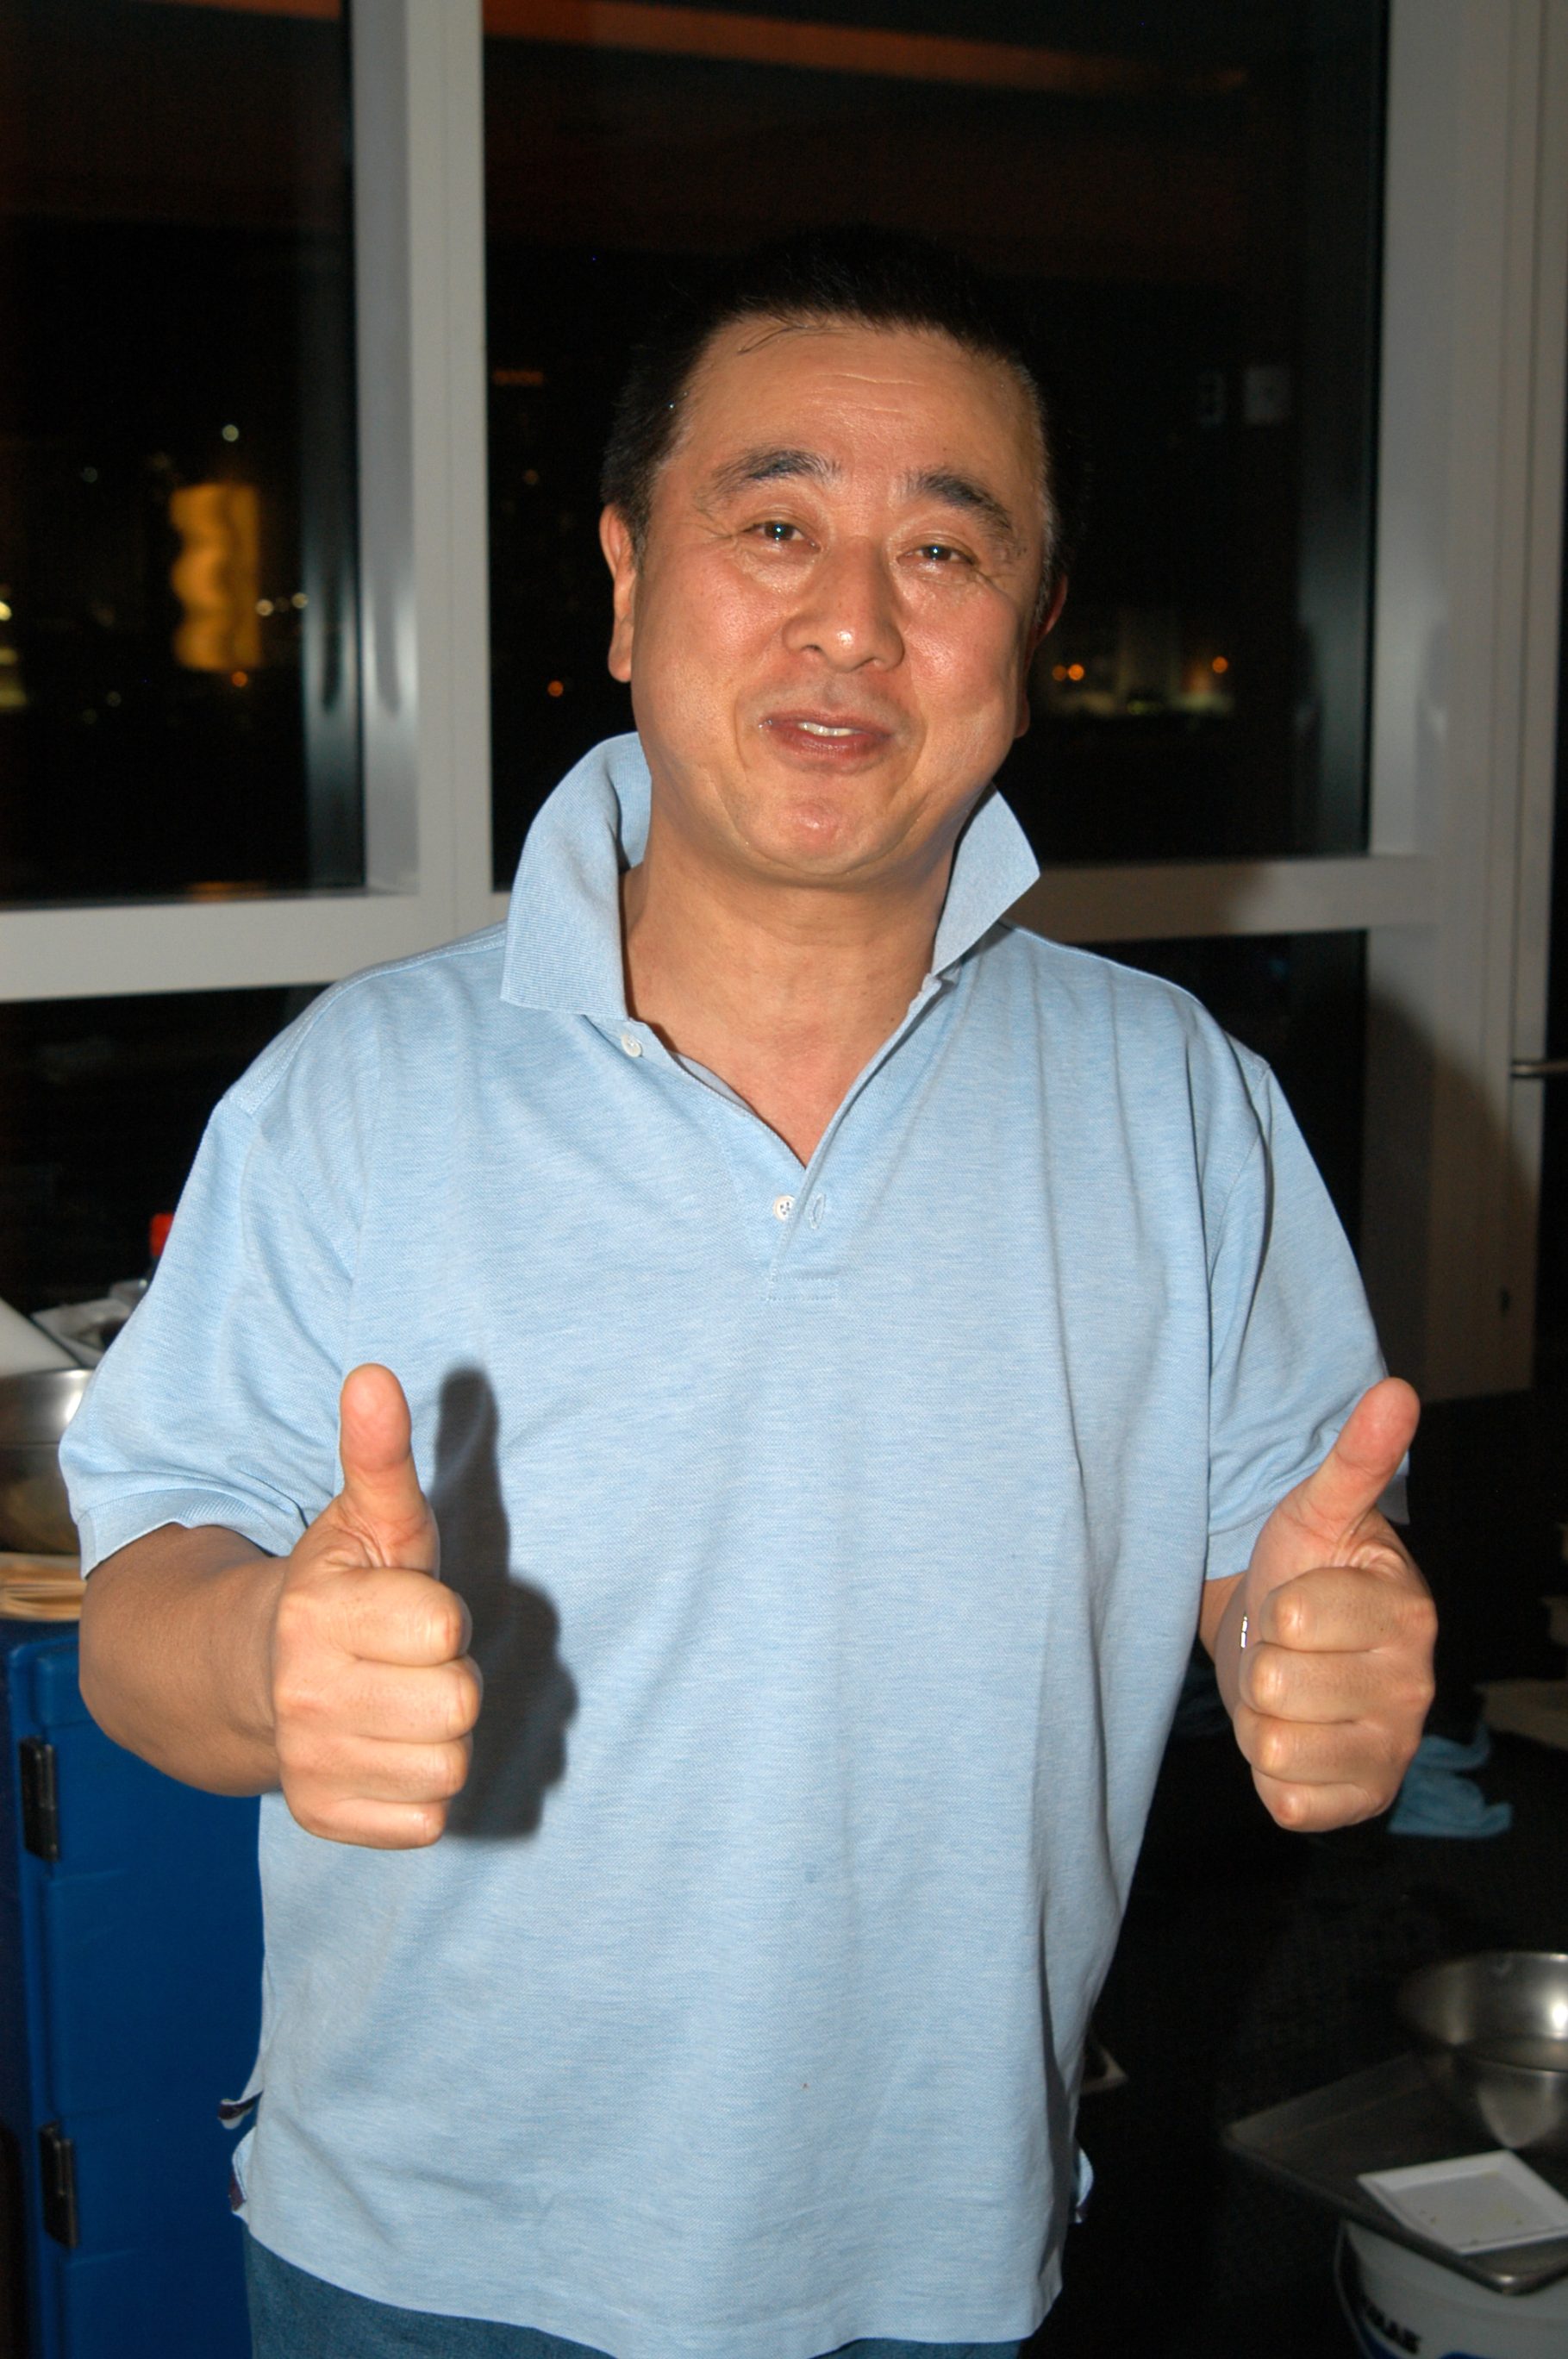 Nobu Matsuhisa - Japanese Celebrity Chef of Top Richest Celebrity Chefs